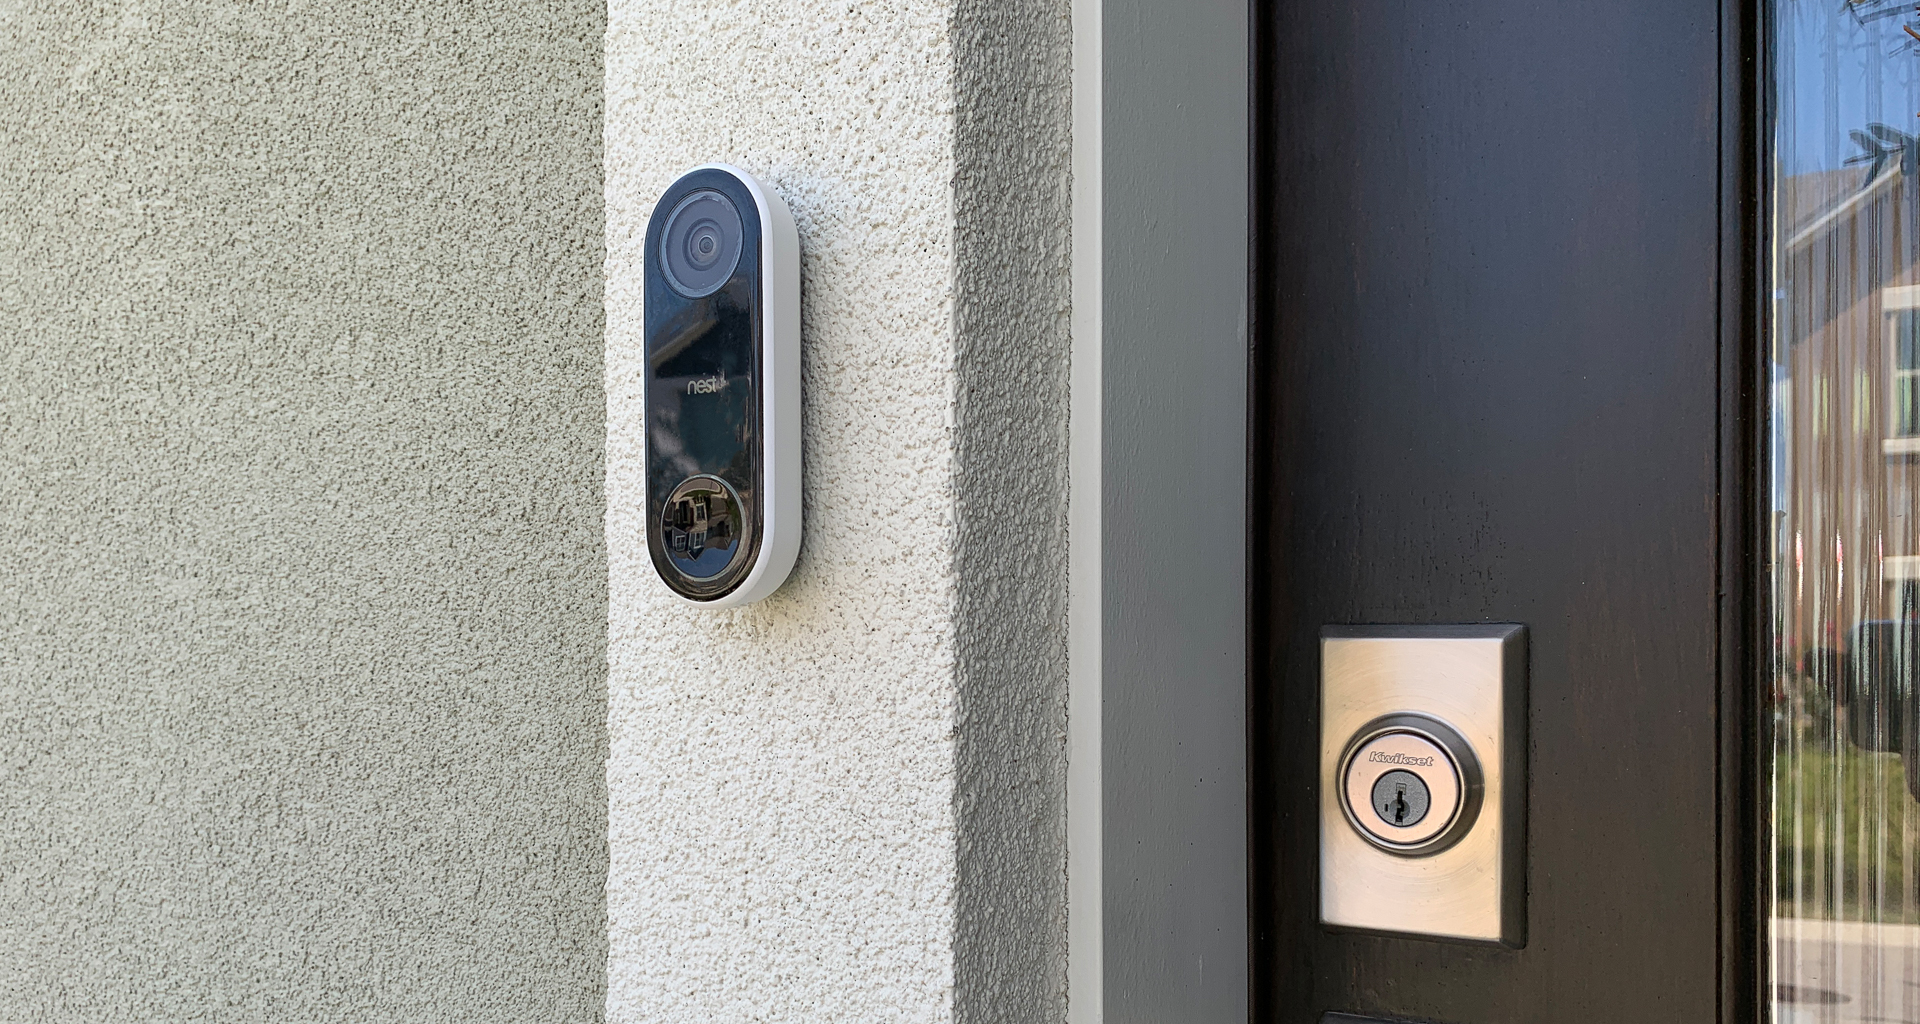 power adapter for nest hello video doorbell